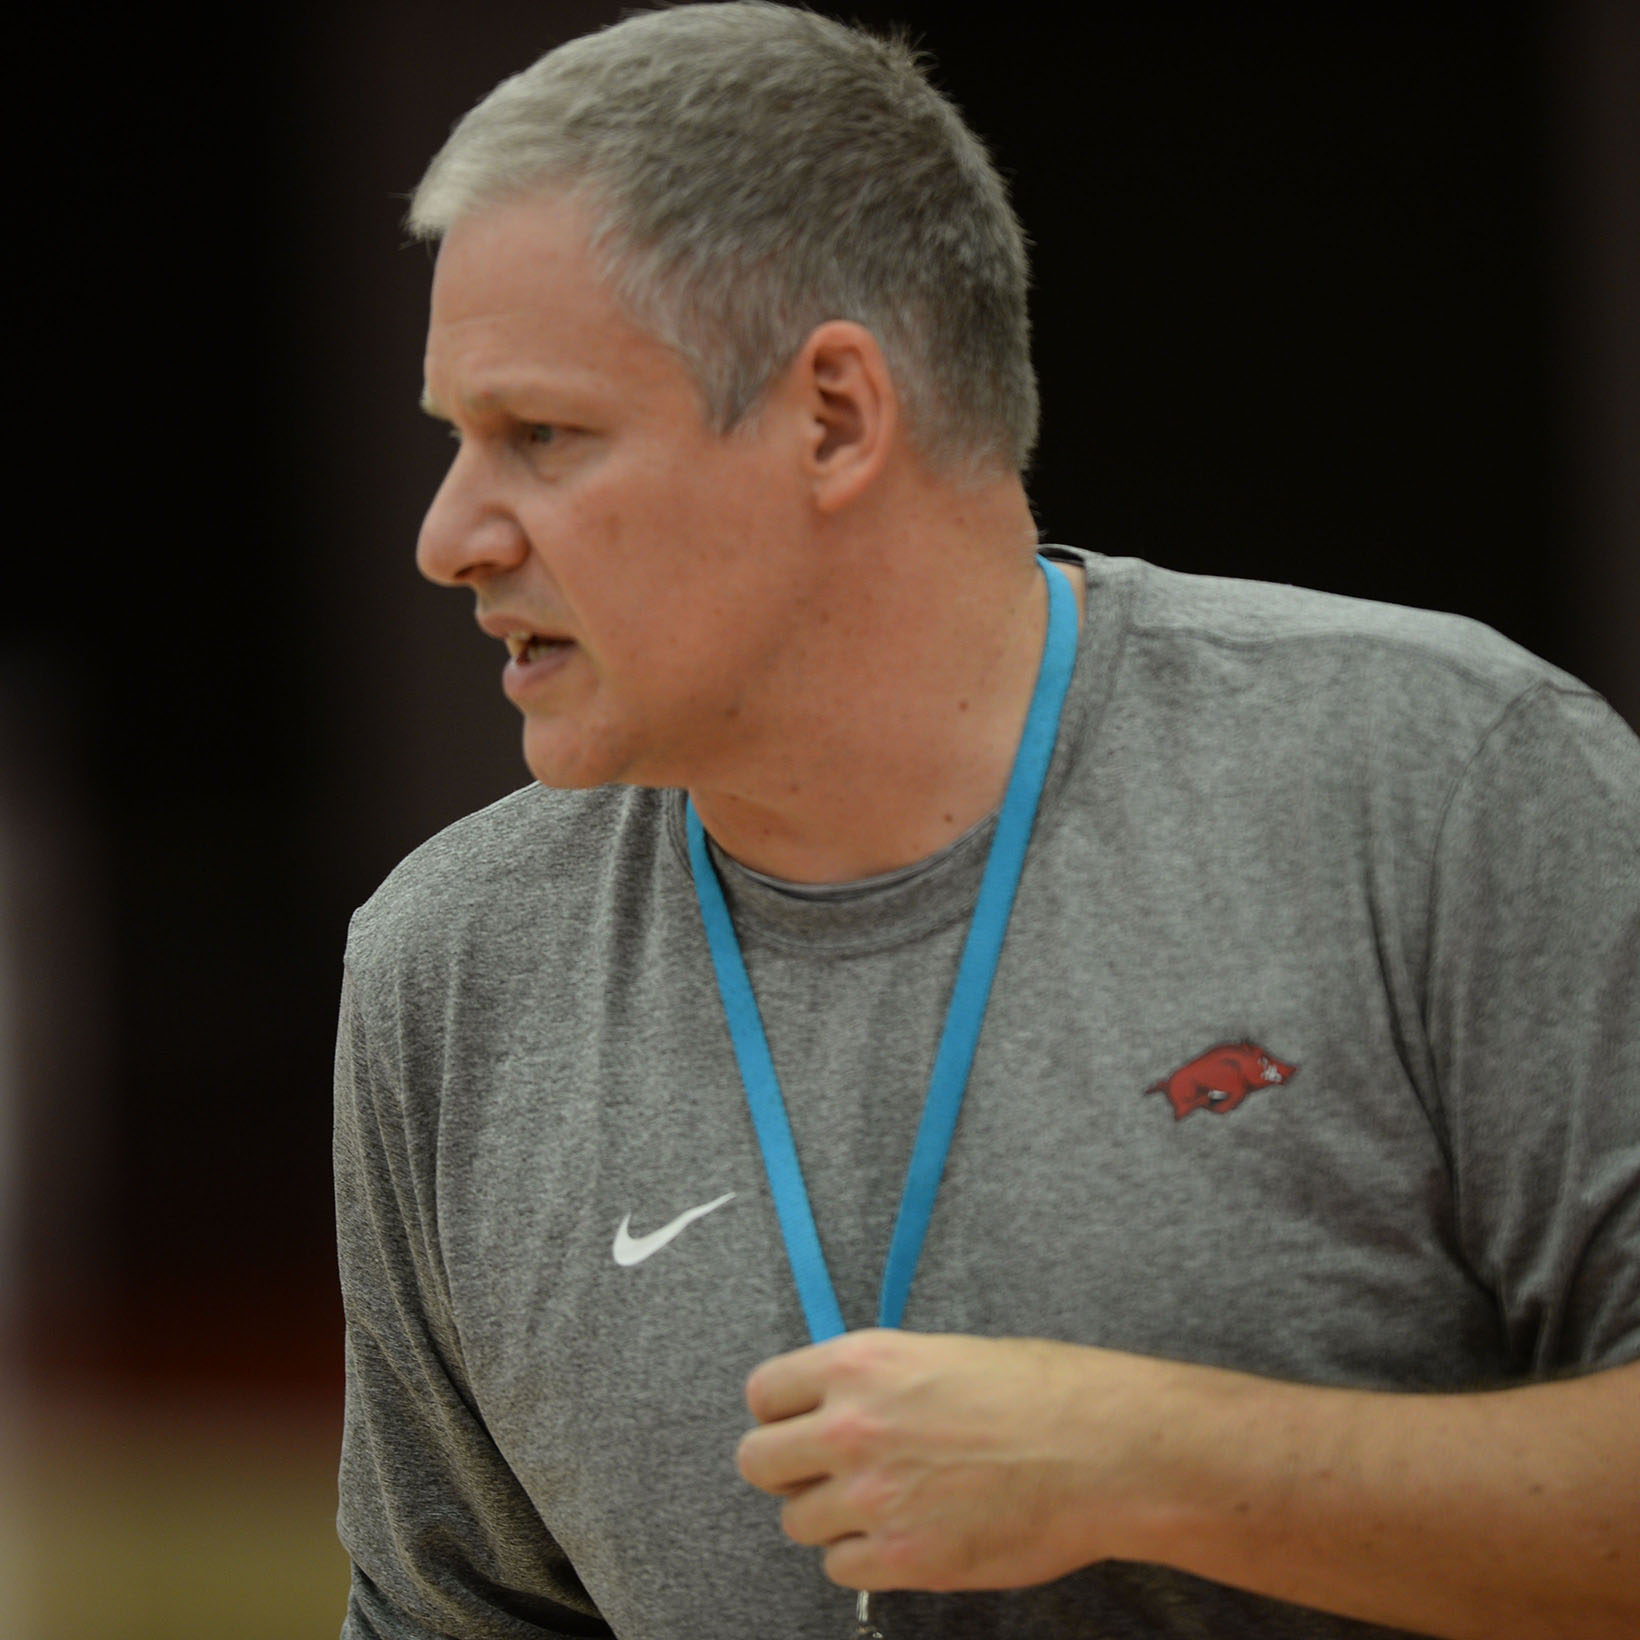 Arkansas Volleyball coach Jason Watson